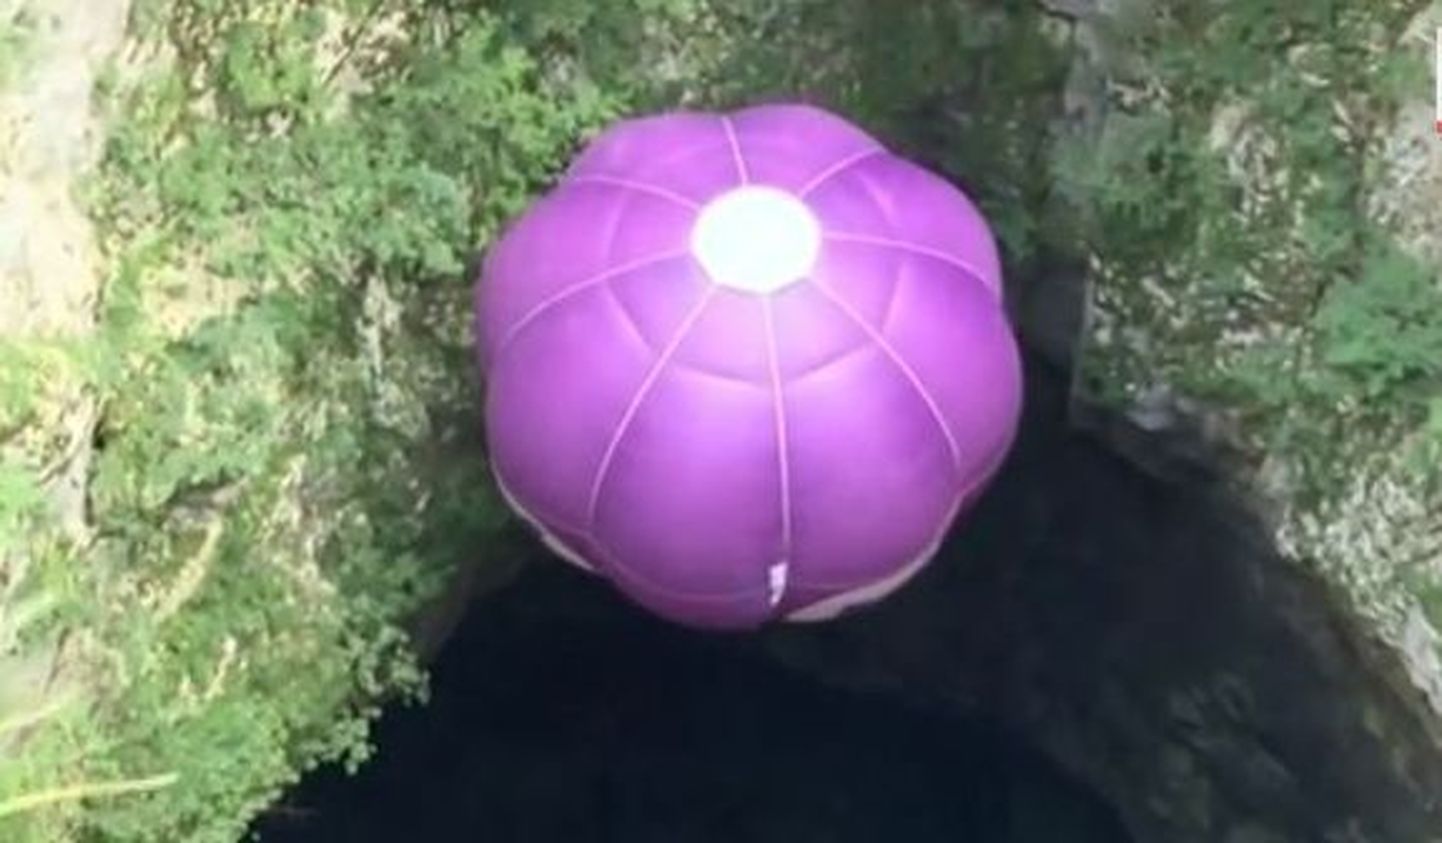 Seikleja laskus kuumaõhupalli abil koopas 200 meetri sügavusele